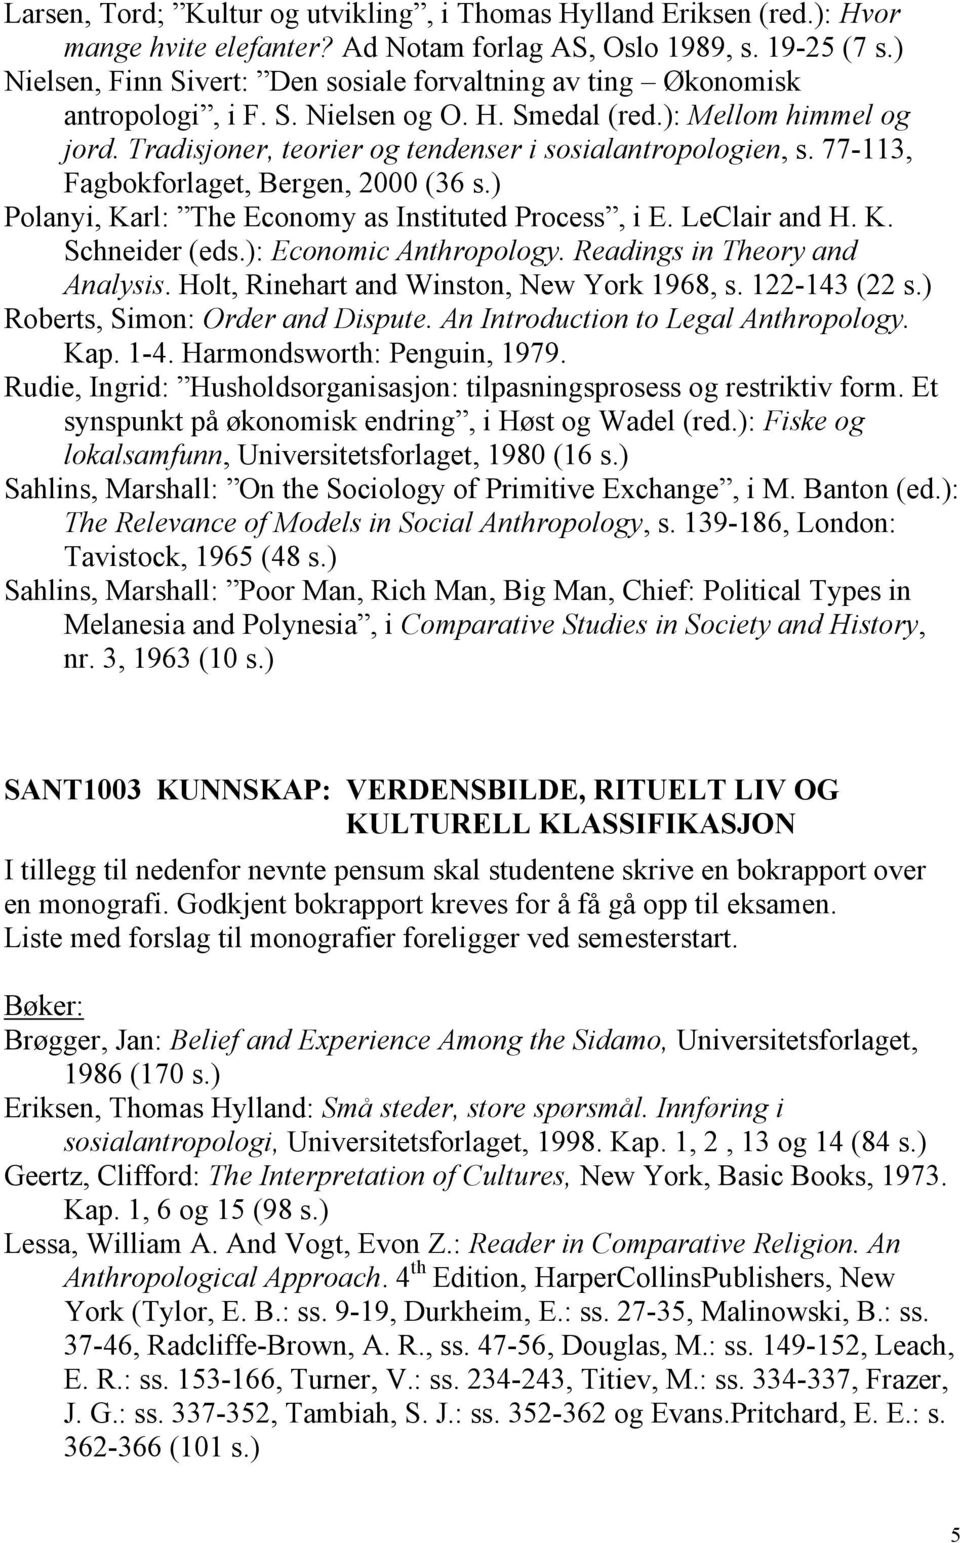 Tradisjoner, teorier og tendenser i sosialantropologien, s. 77-113, Fagbokforlaget, Bergen, 2000 (36 s.) Polanyi, Karl: The Economy as Instituted Process, i E. LeClair and H. K. Schneider (eds.